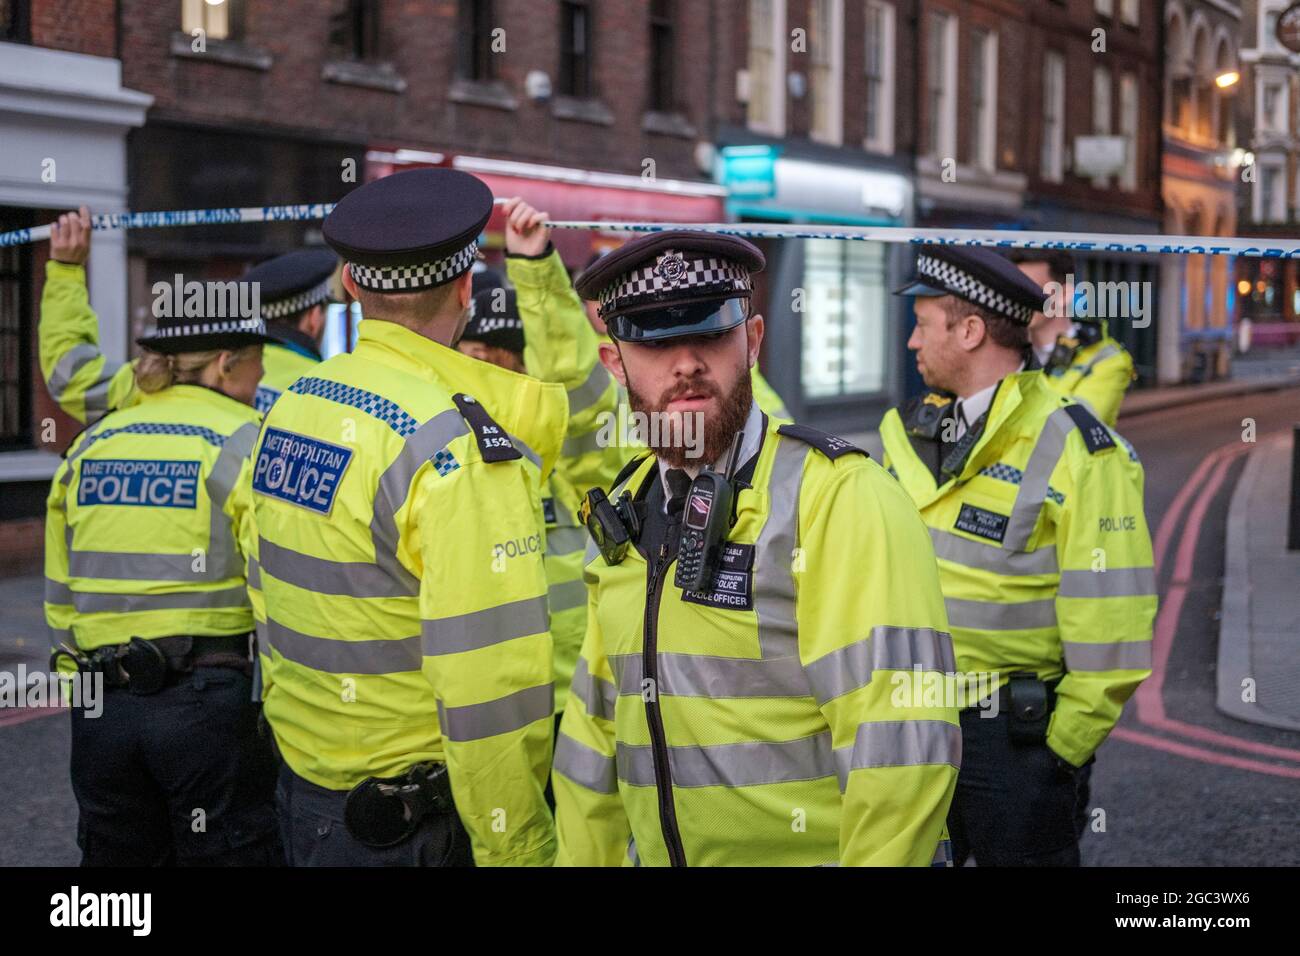 Gli ufficiali della polizia metropolitana che corrodono fuori di una scena criminale, durante l'attacco terroristico del London Bridge su 29 del novemebr 2019, Londra, Inghilterra Foto Stock